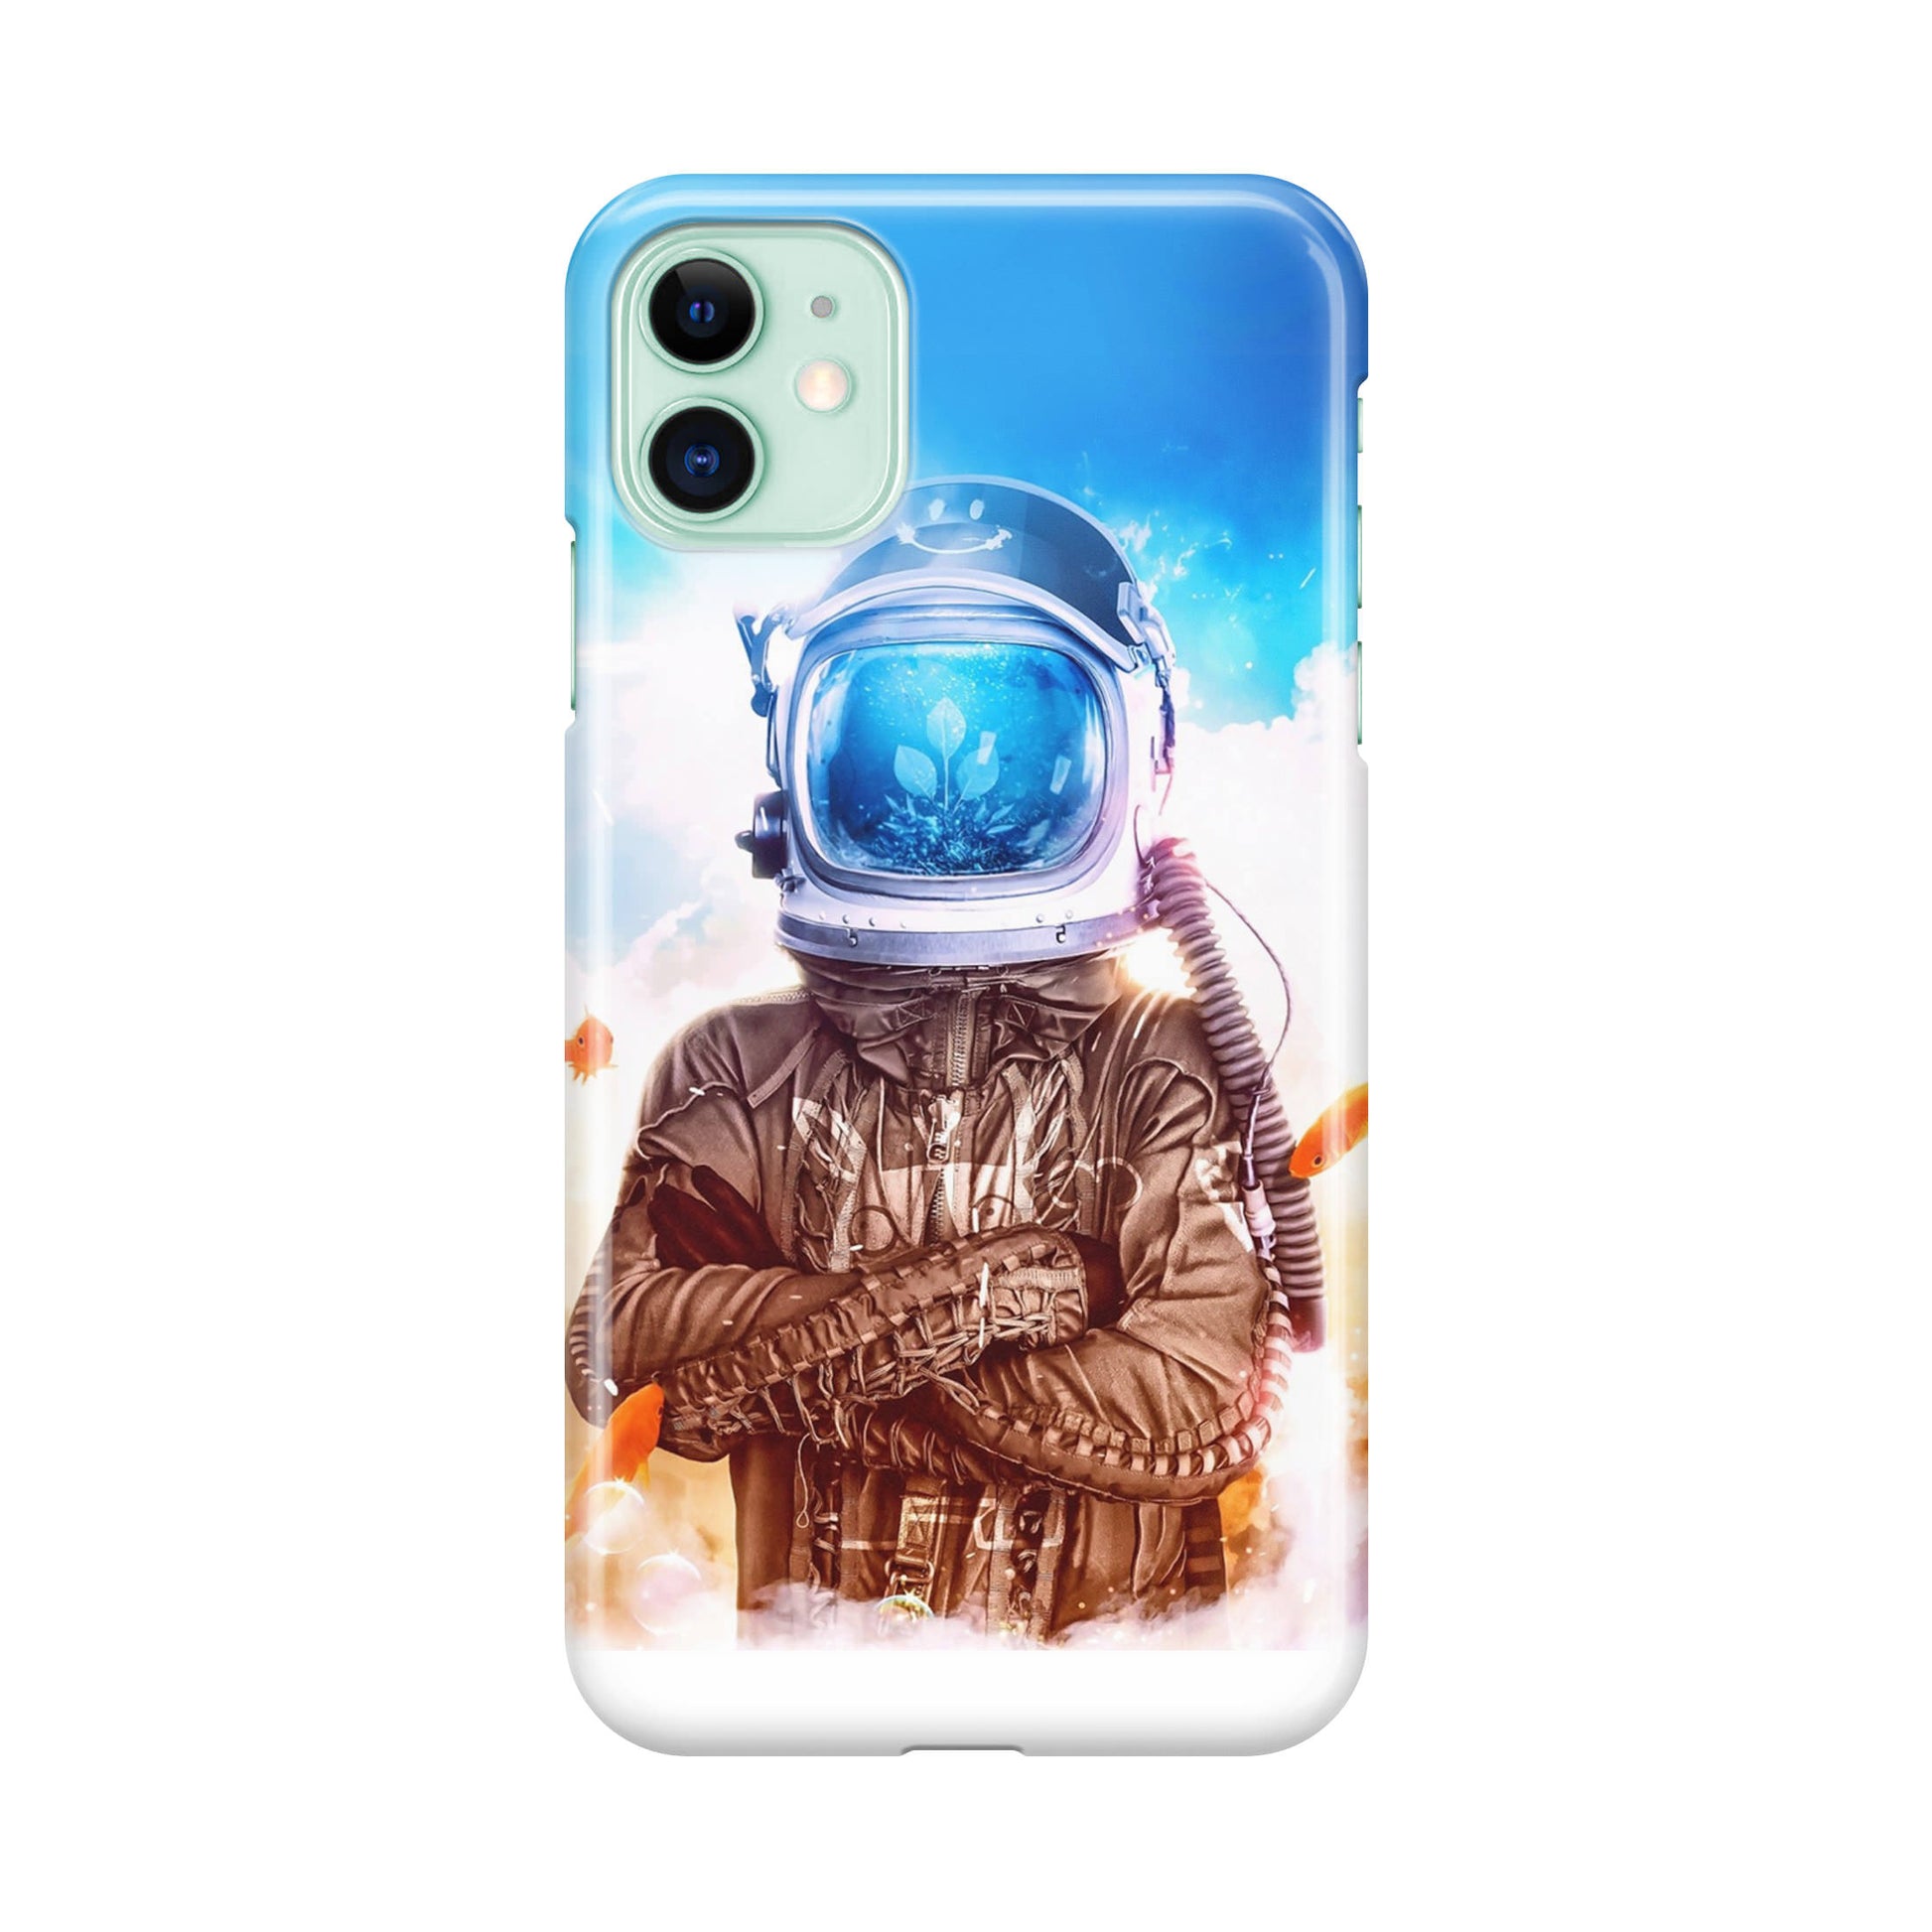 Aquatronauts iPhone 11 Case